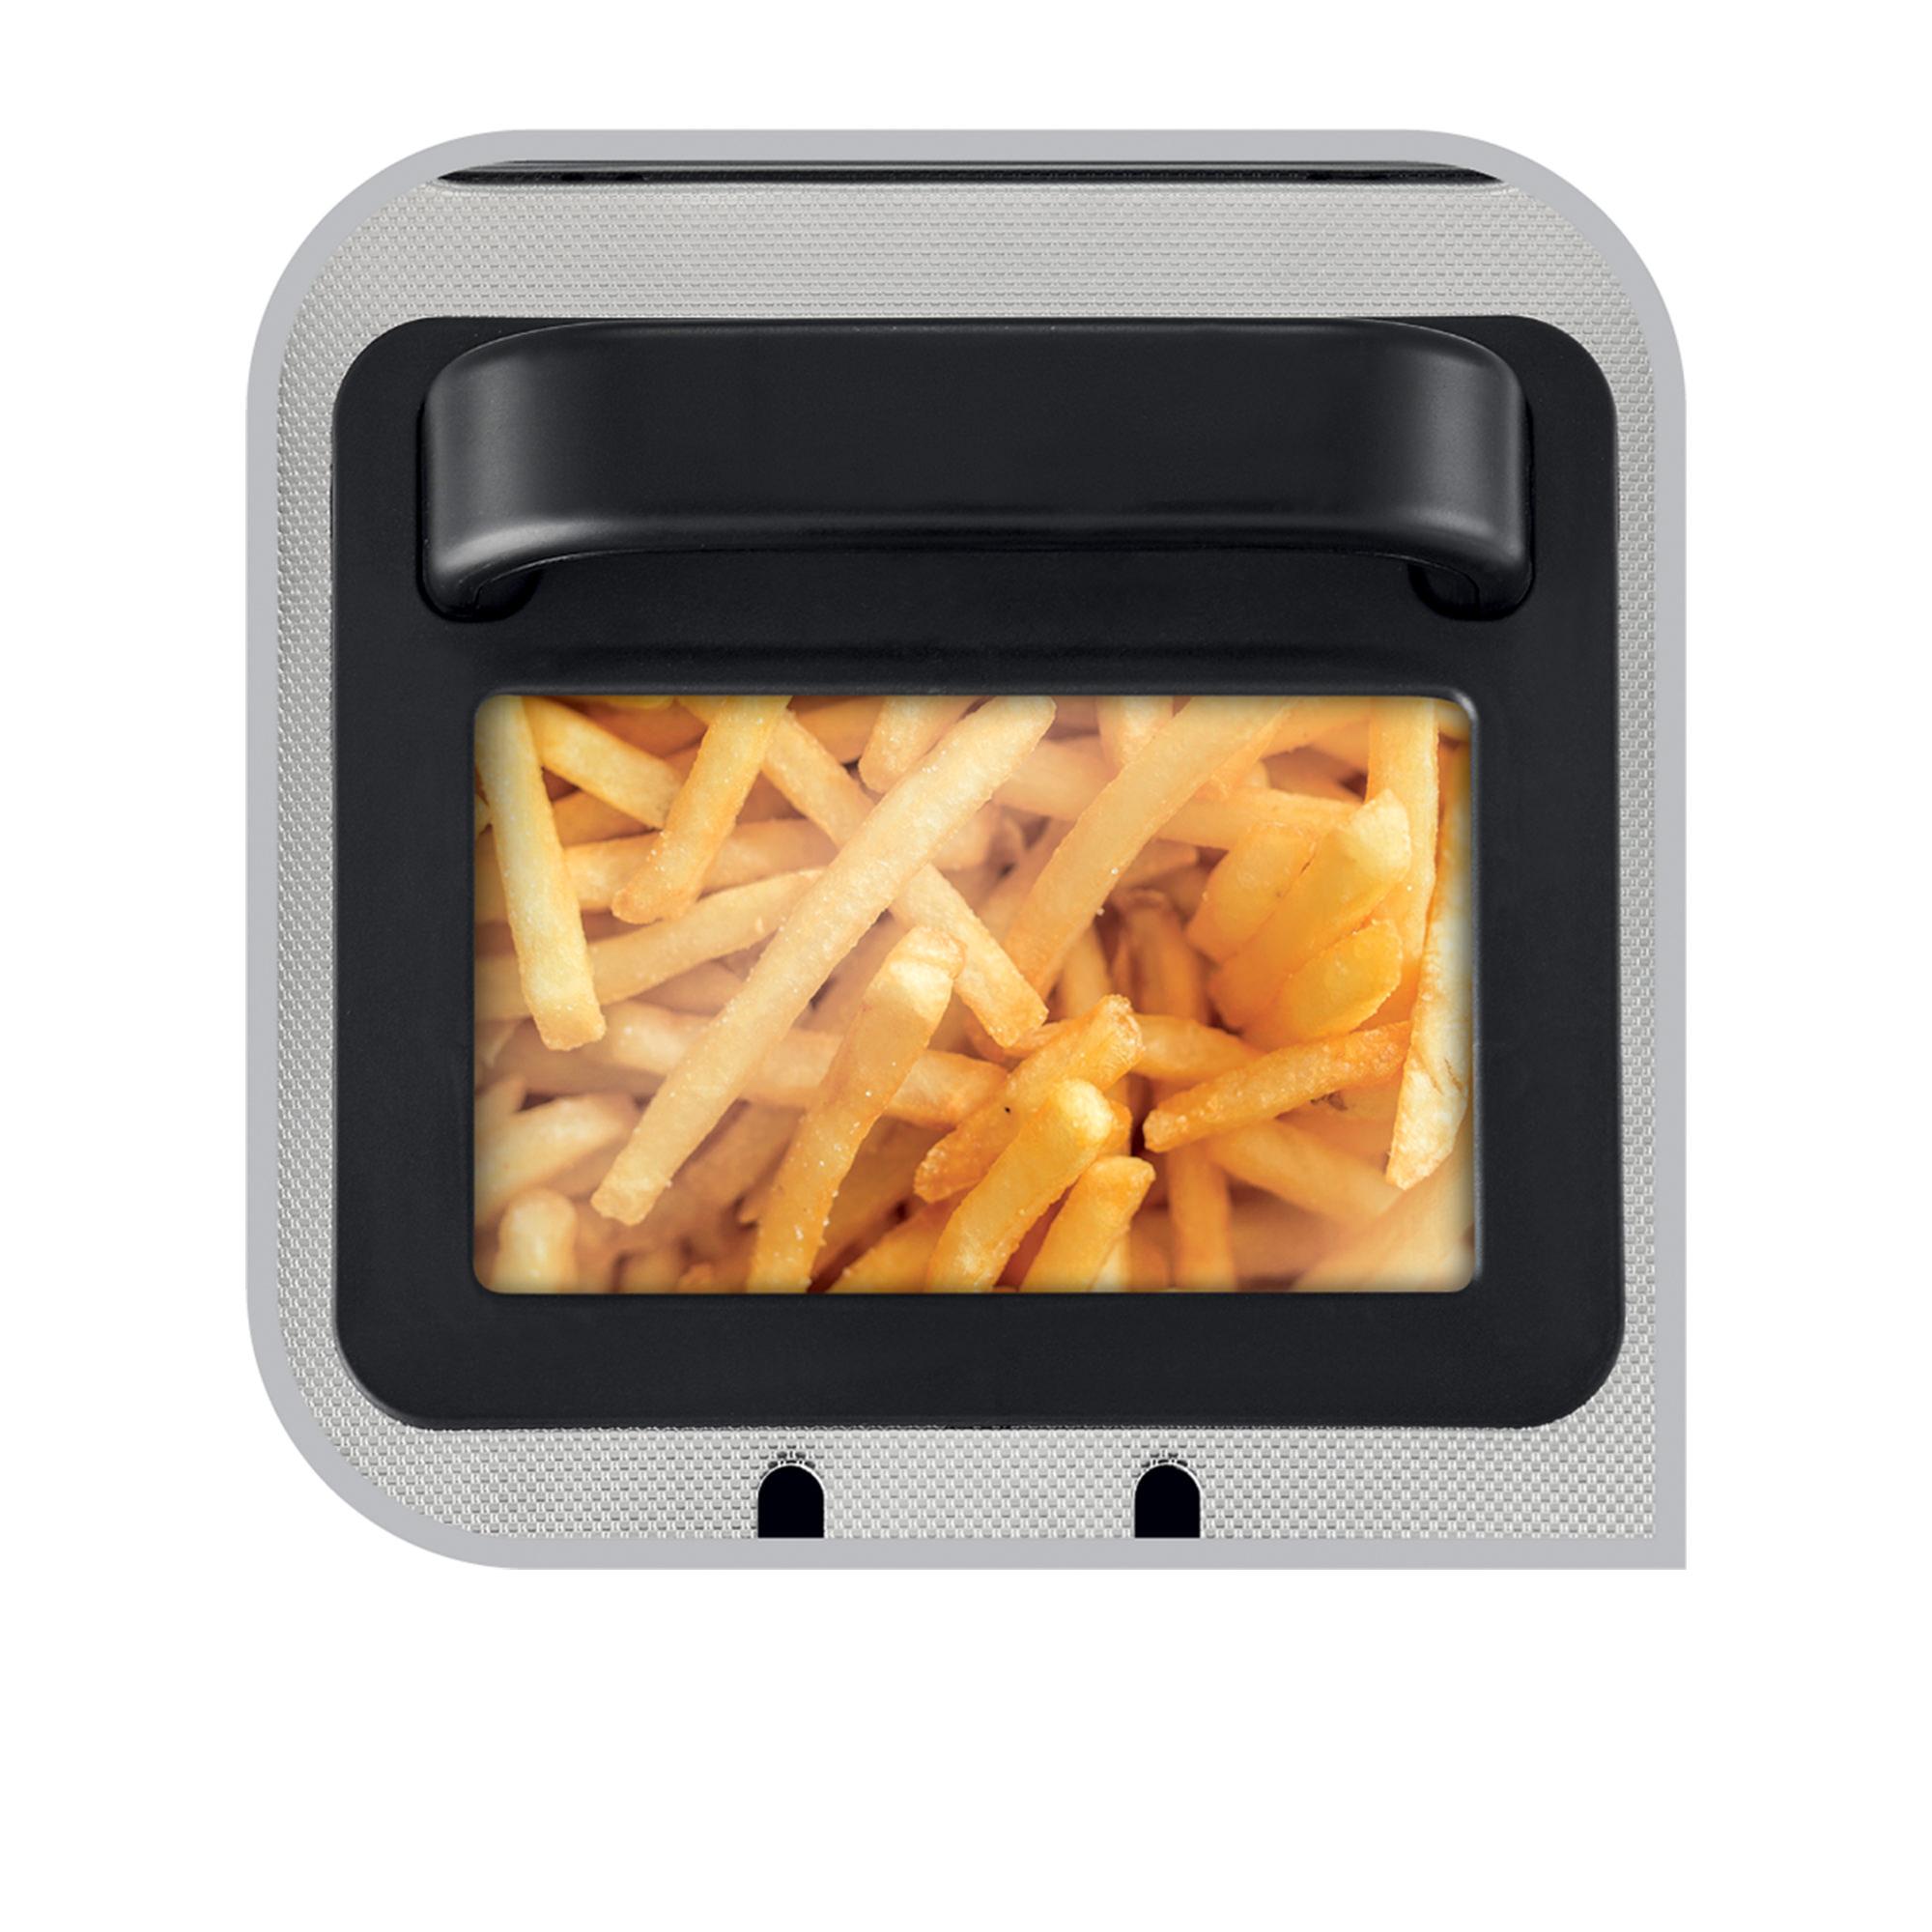 Tefal Filtra Pro FR5181 Deep Fryer 4L Image 4